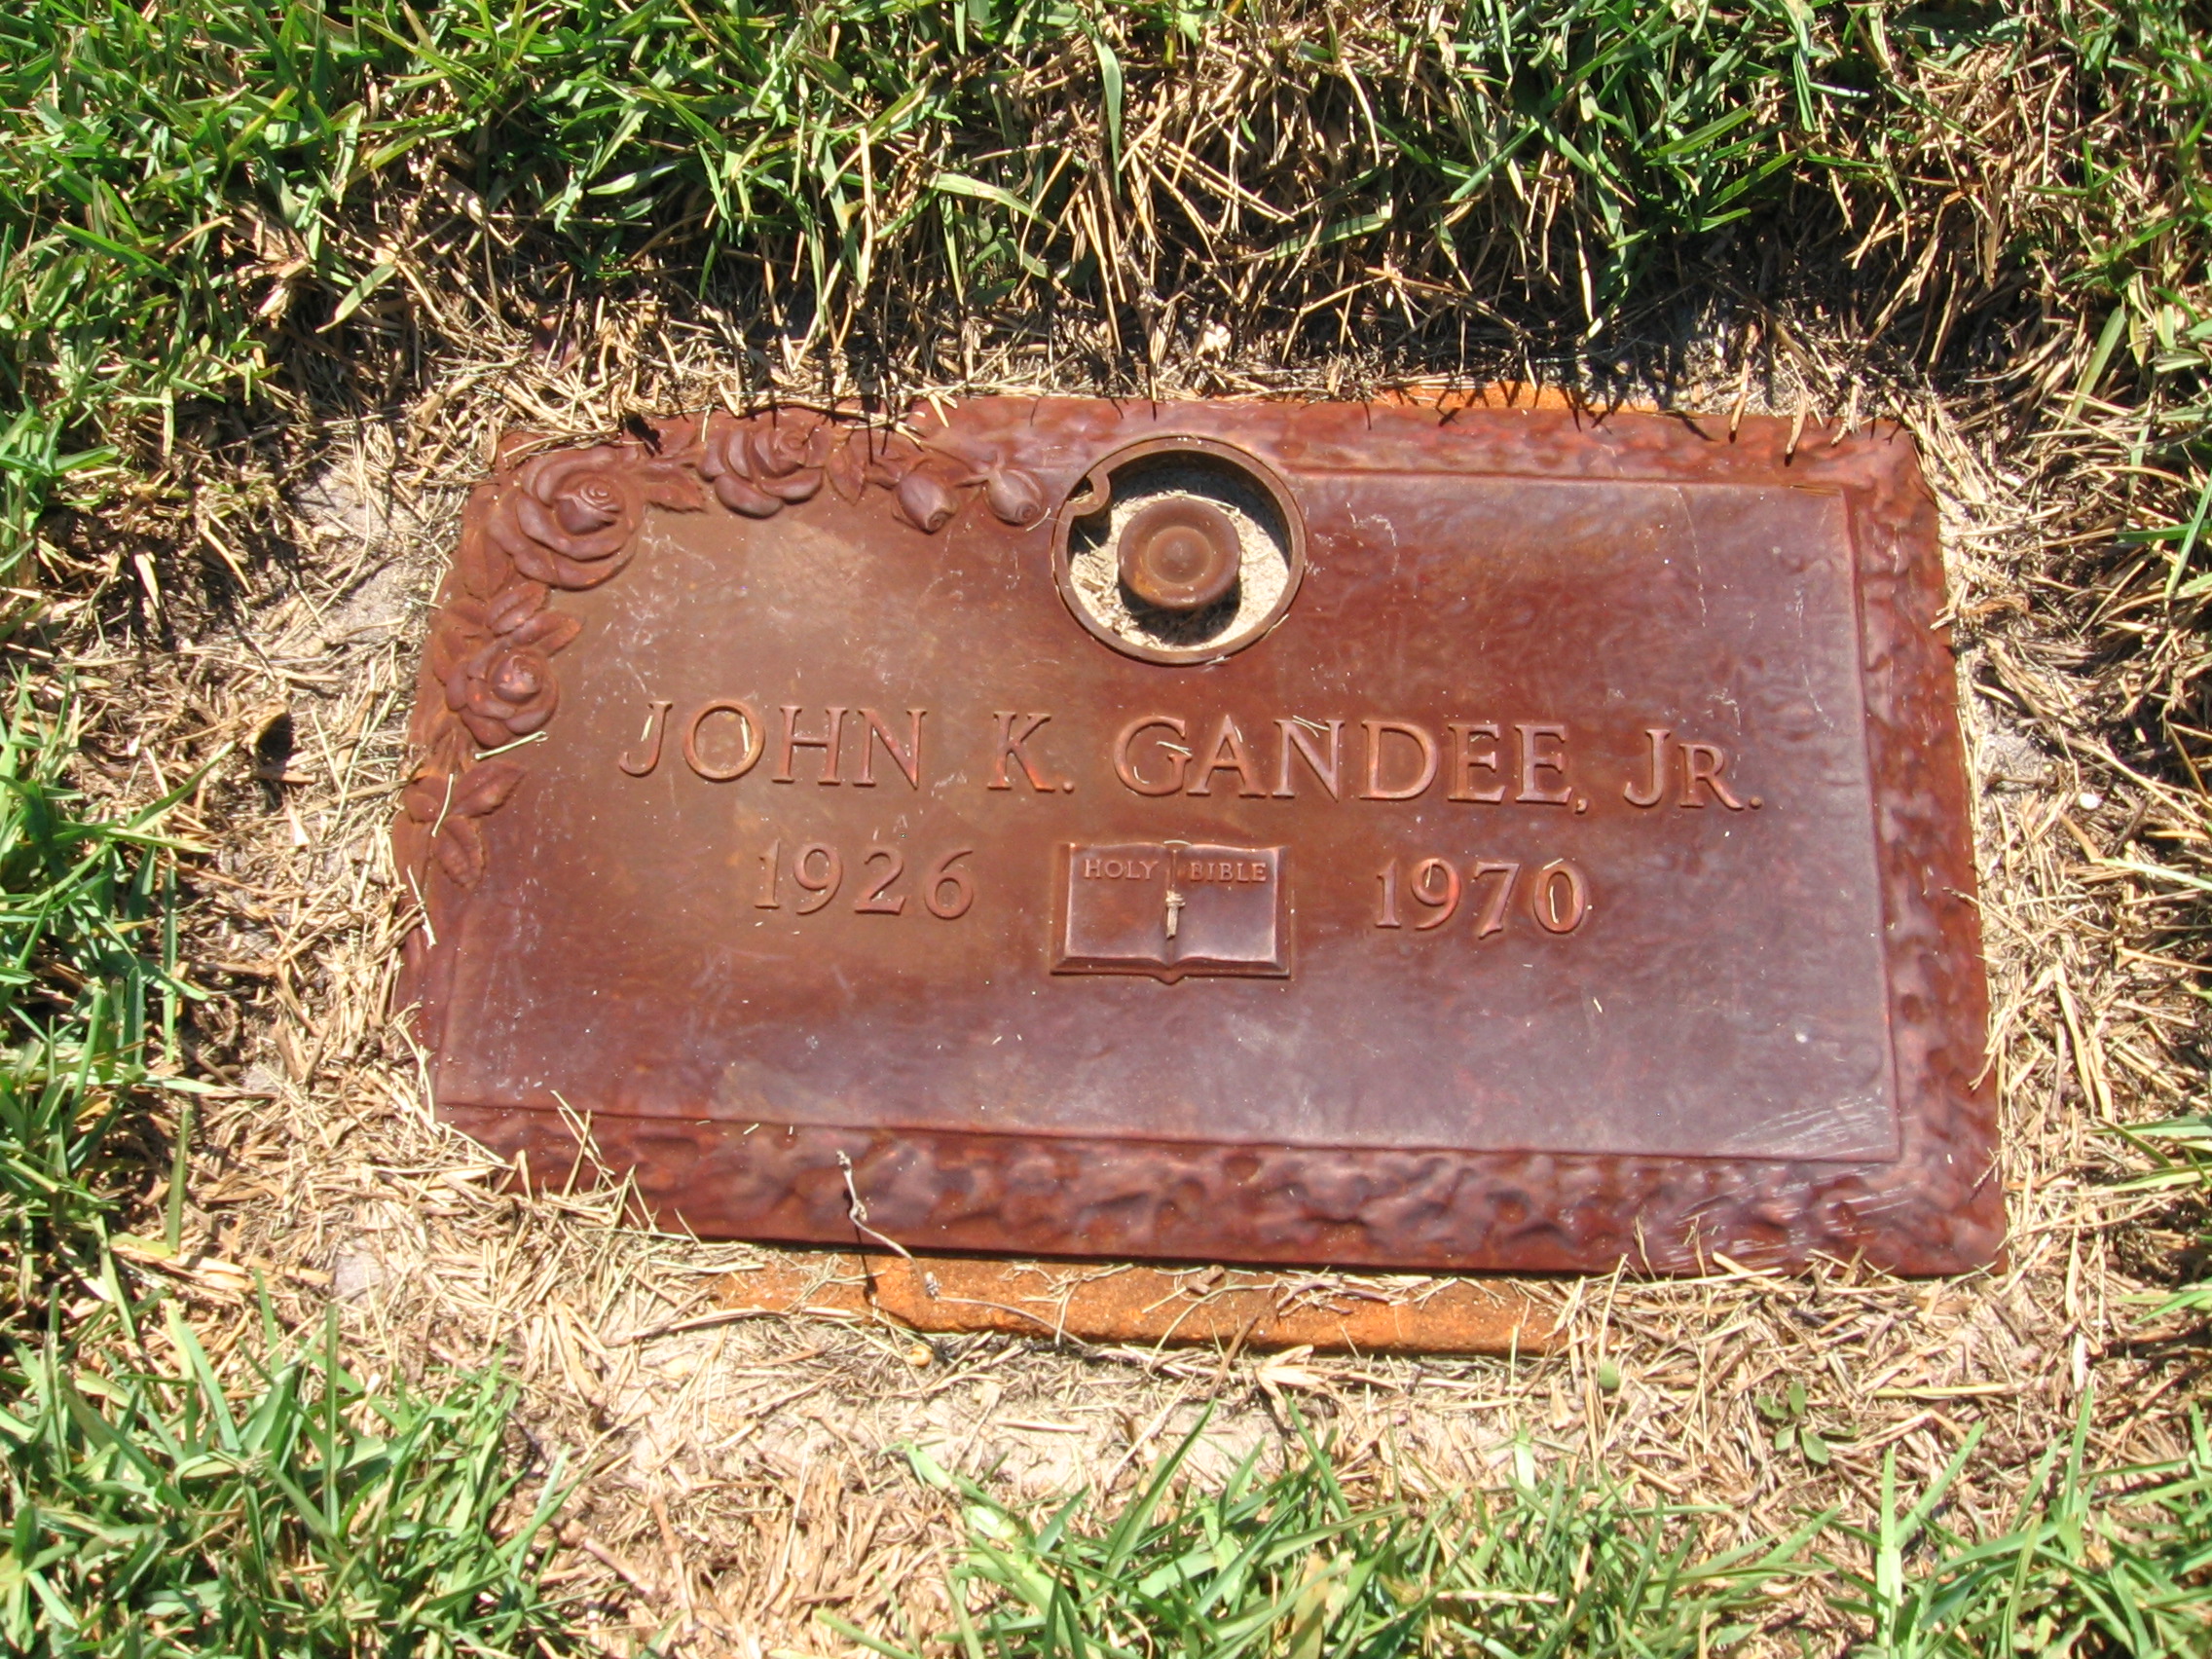 John K Gandee, Jr